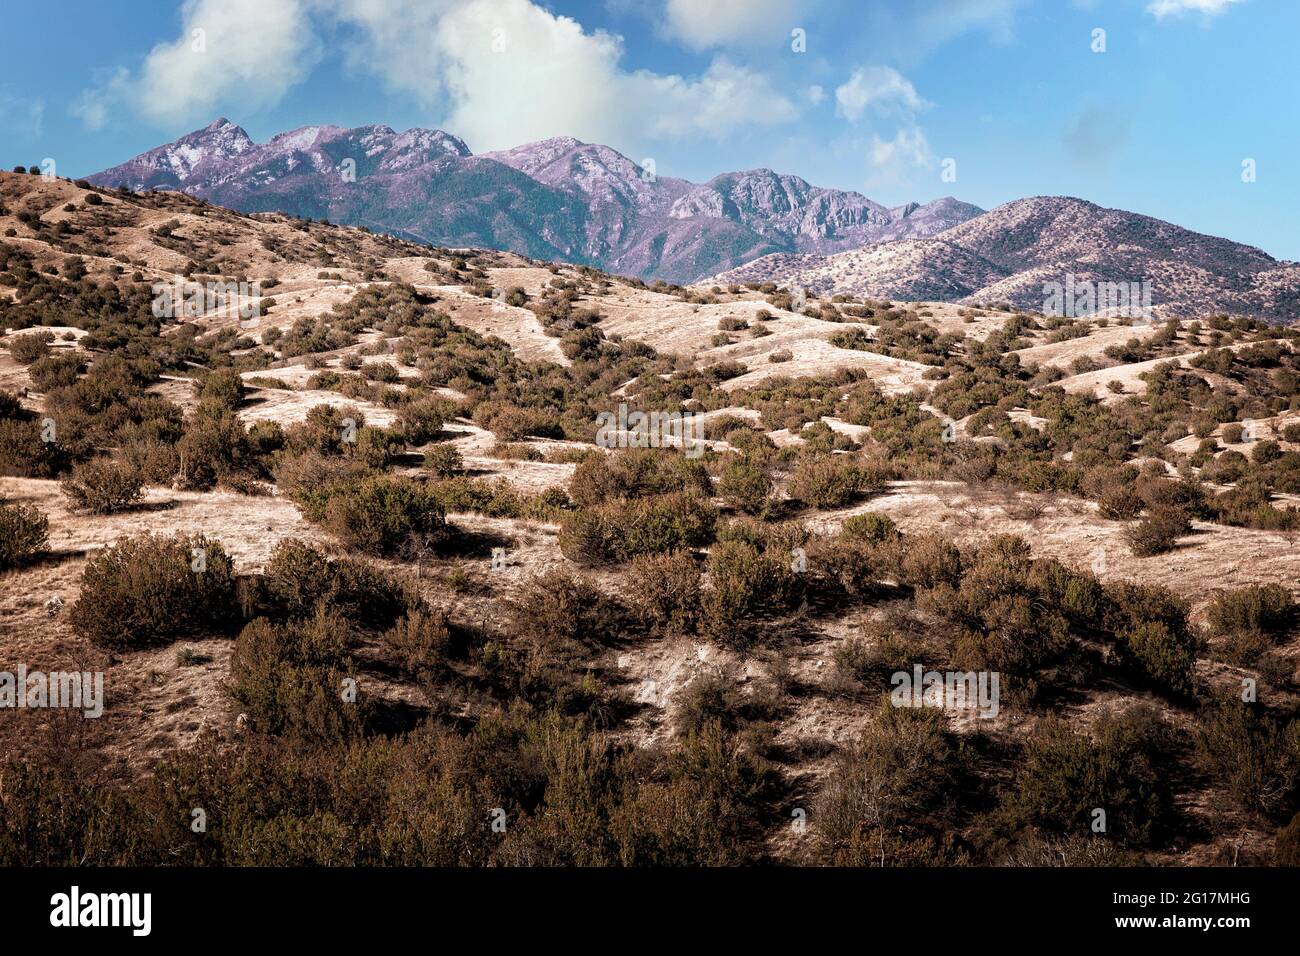 Die hohe Wüste und die Berge des südlichen Arizona außerhalb von Tucson. Stockfoto